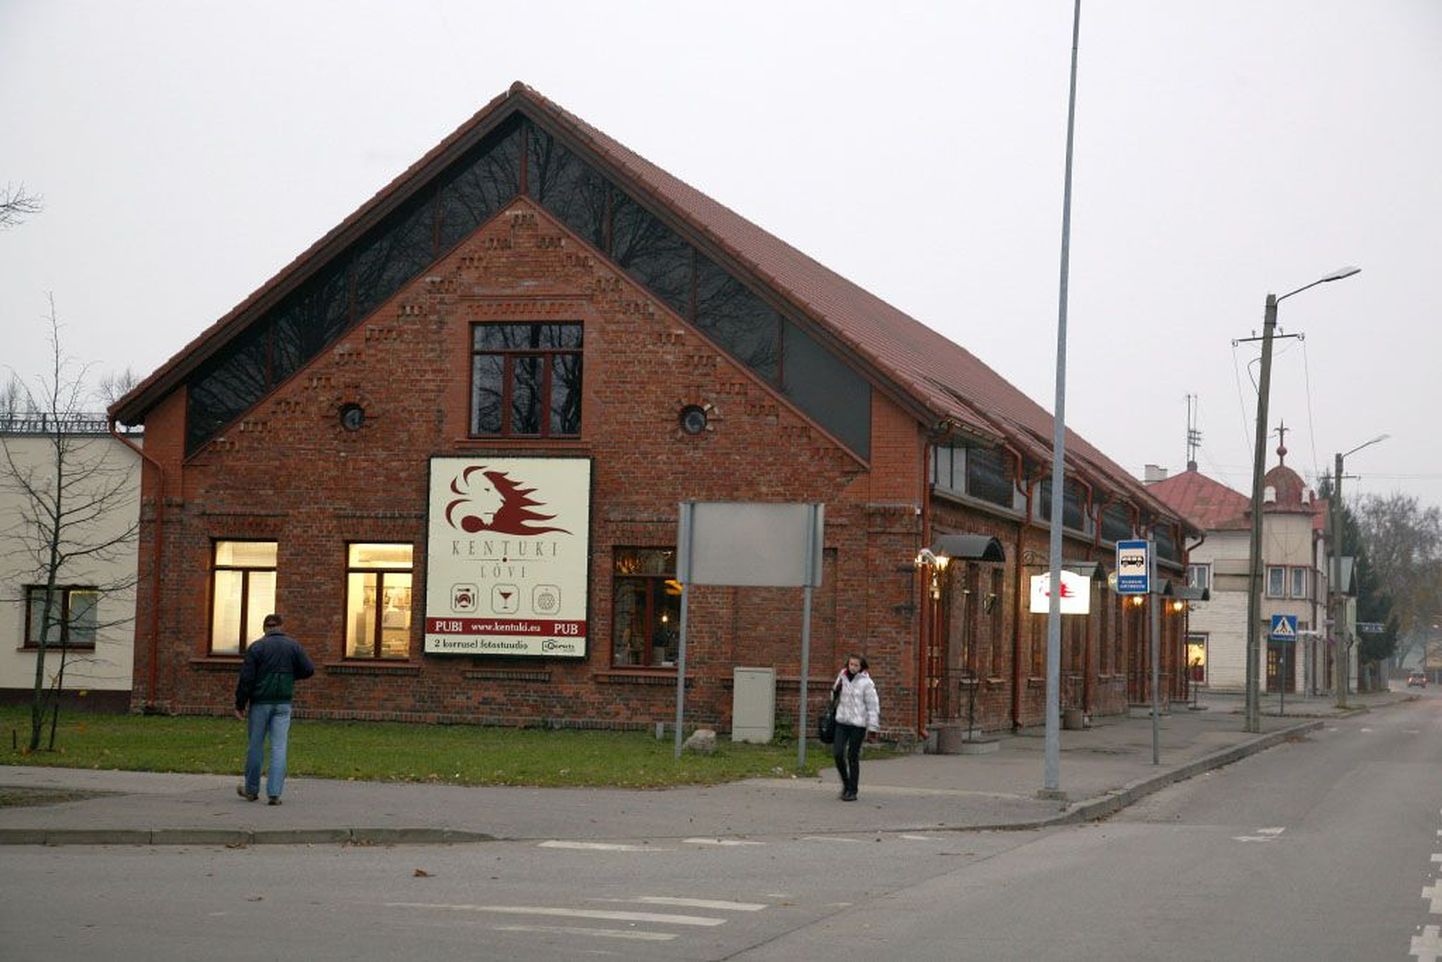 Praegu Kentuki Lõvi pubina tuntud maja oli Eesti Vabariigi ajal ehe polüfunktsionaalsuse näide, selle katuse all tegutsesid sõbralikult erinevad ettevõtted.